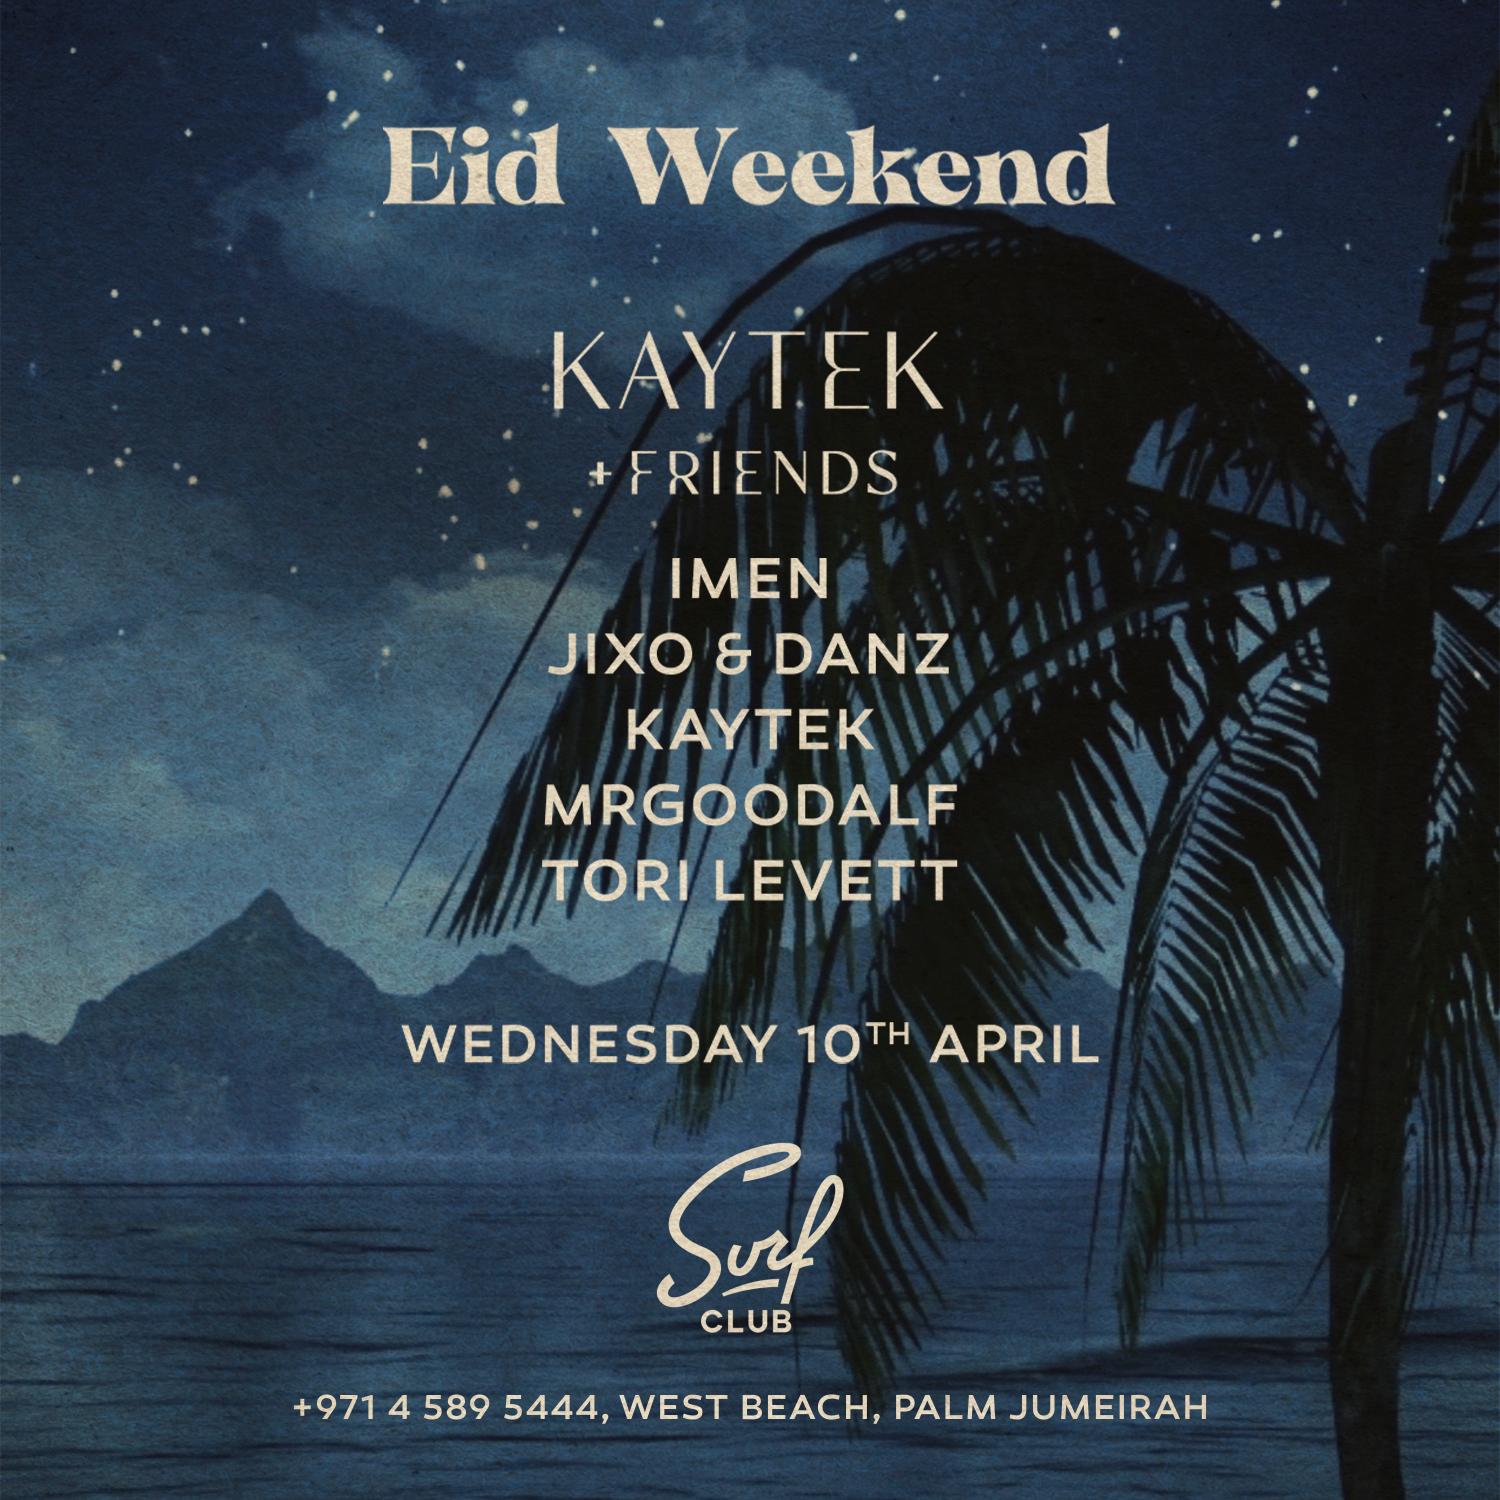 EID WEEKEND at Surf Club KAYTEK + Friends